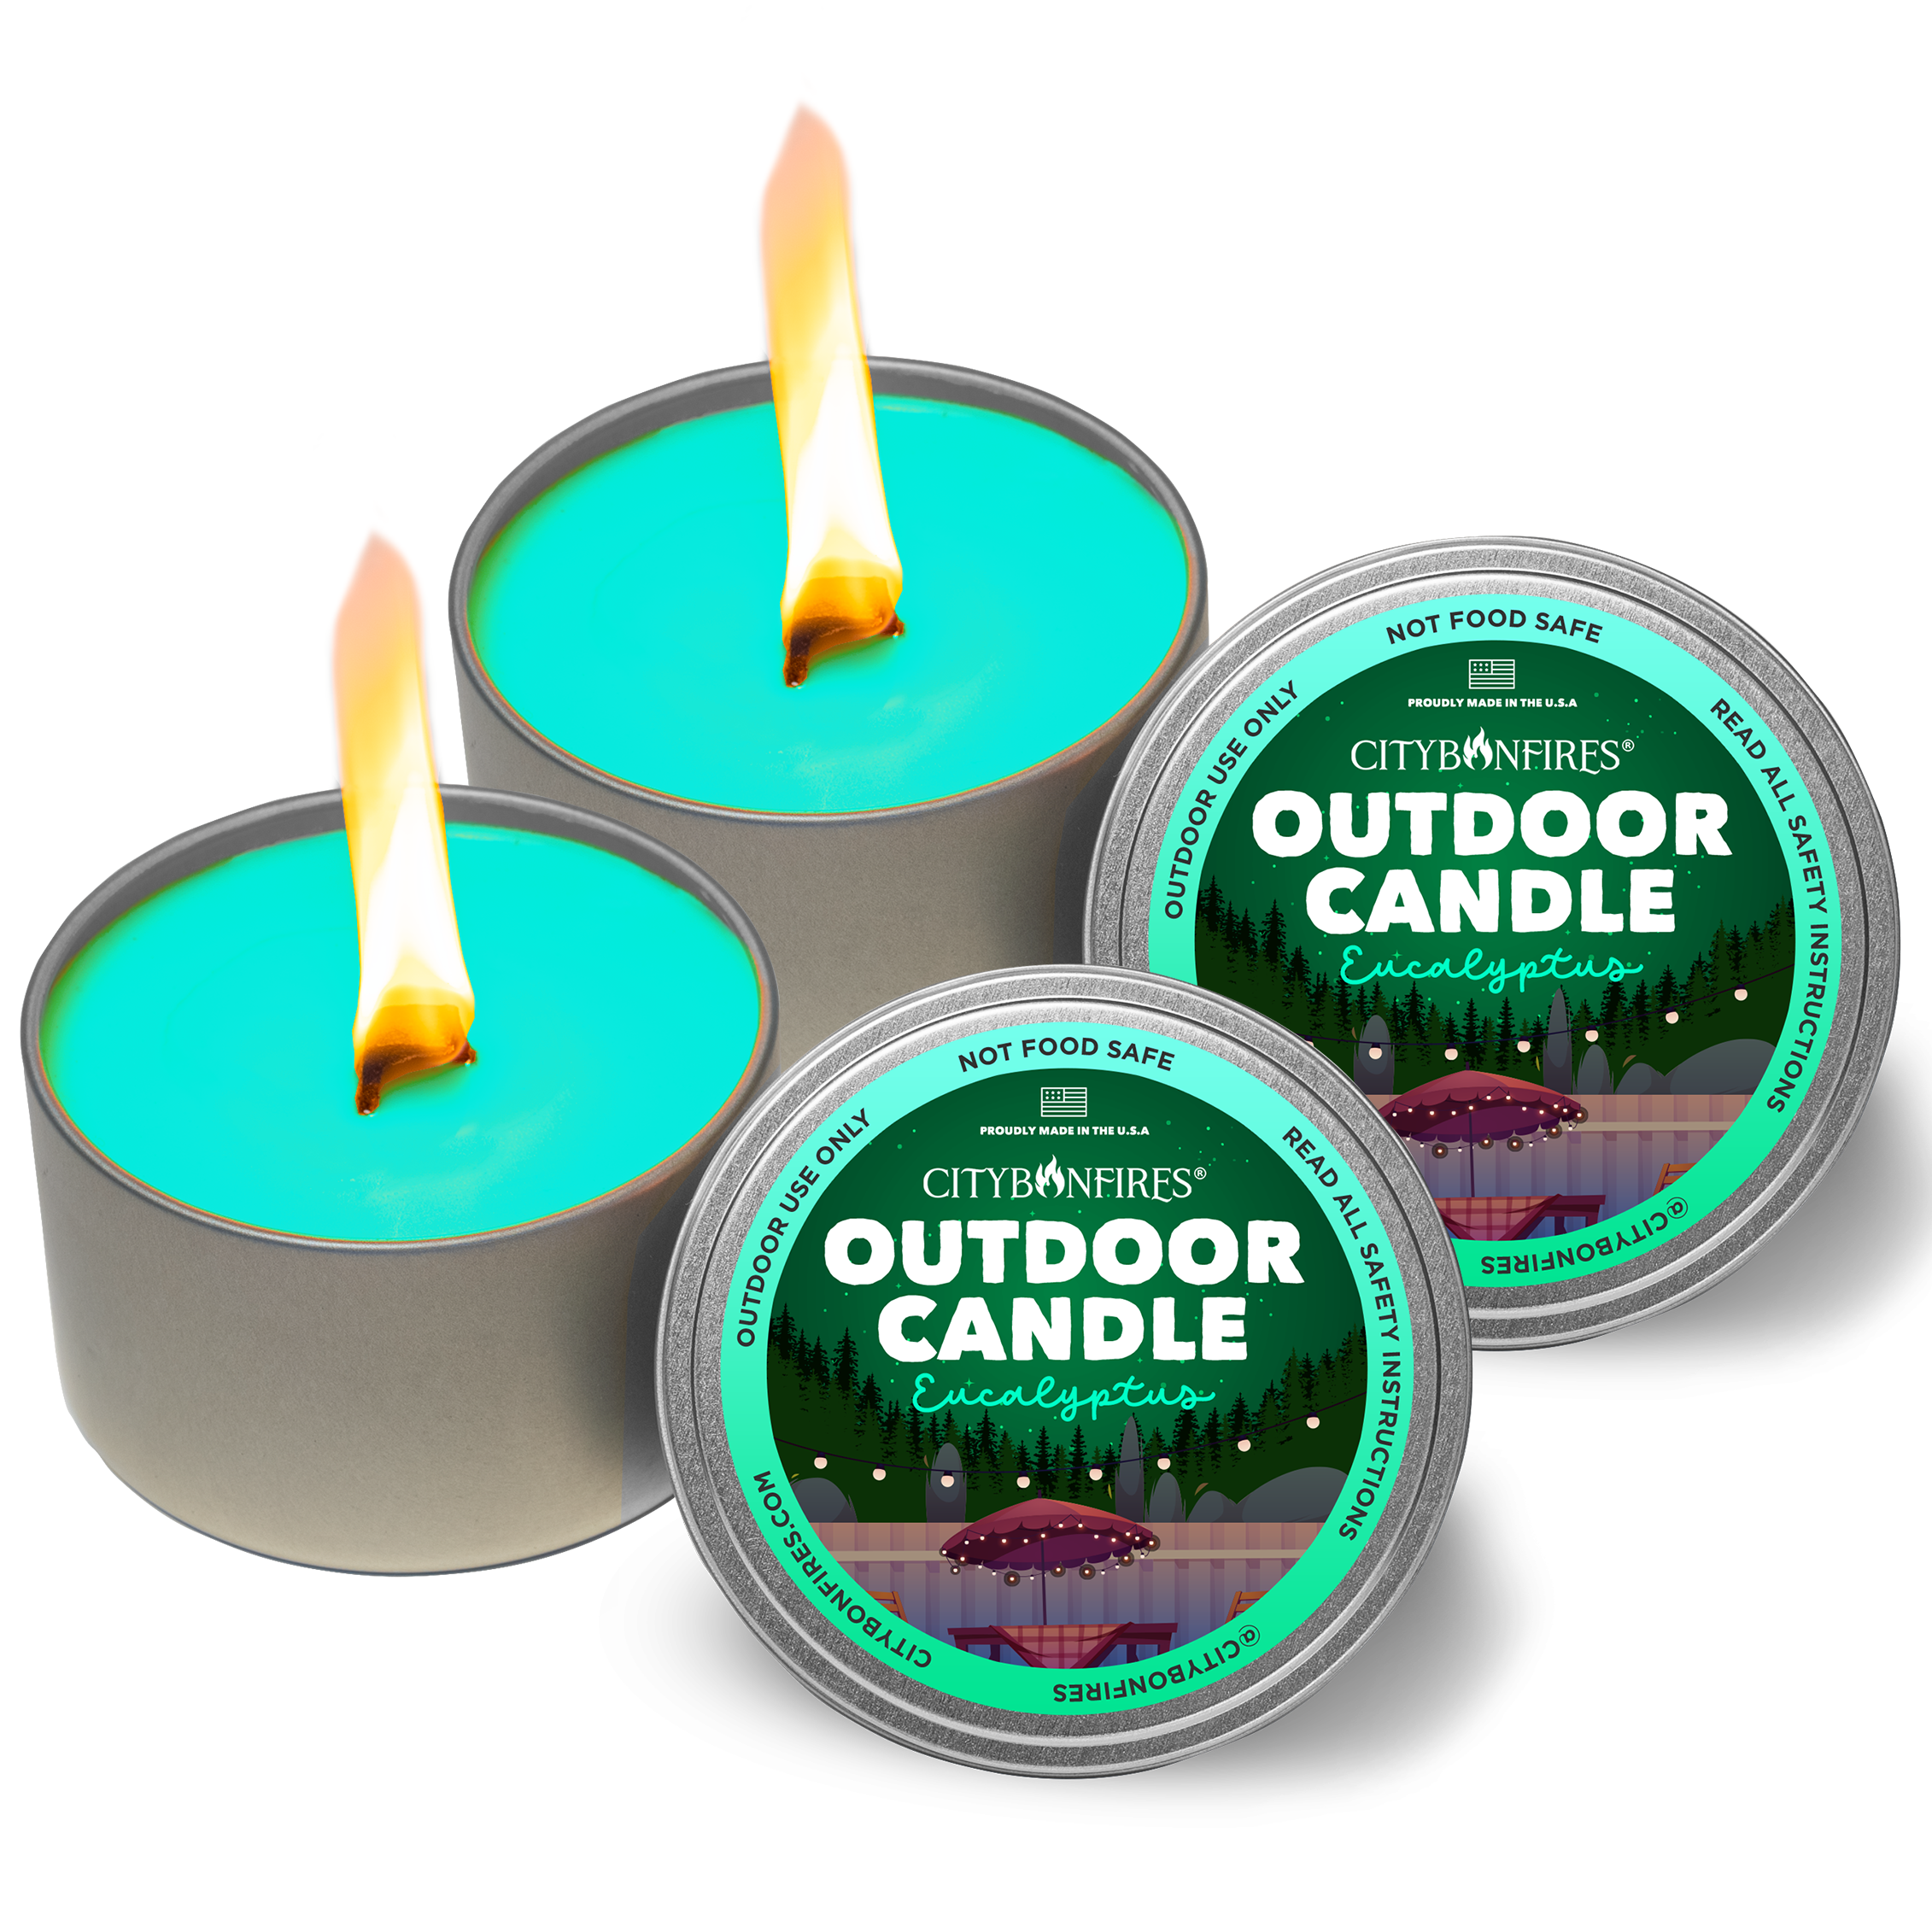 The Outdoor Candle - Eucalyptus